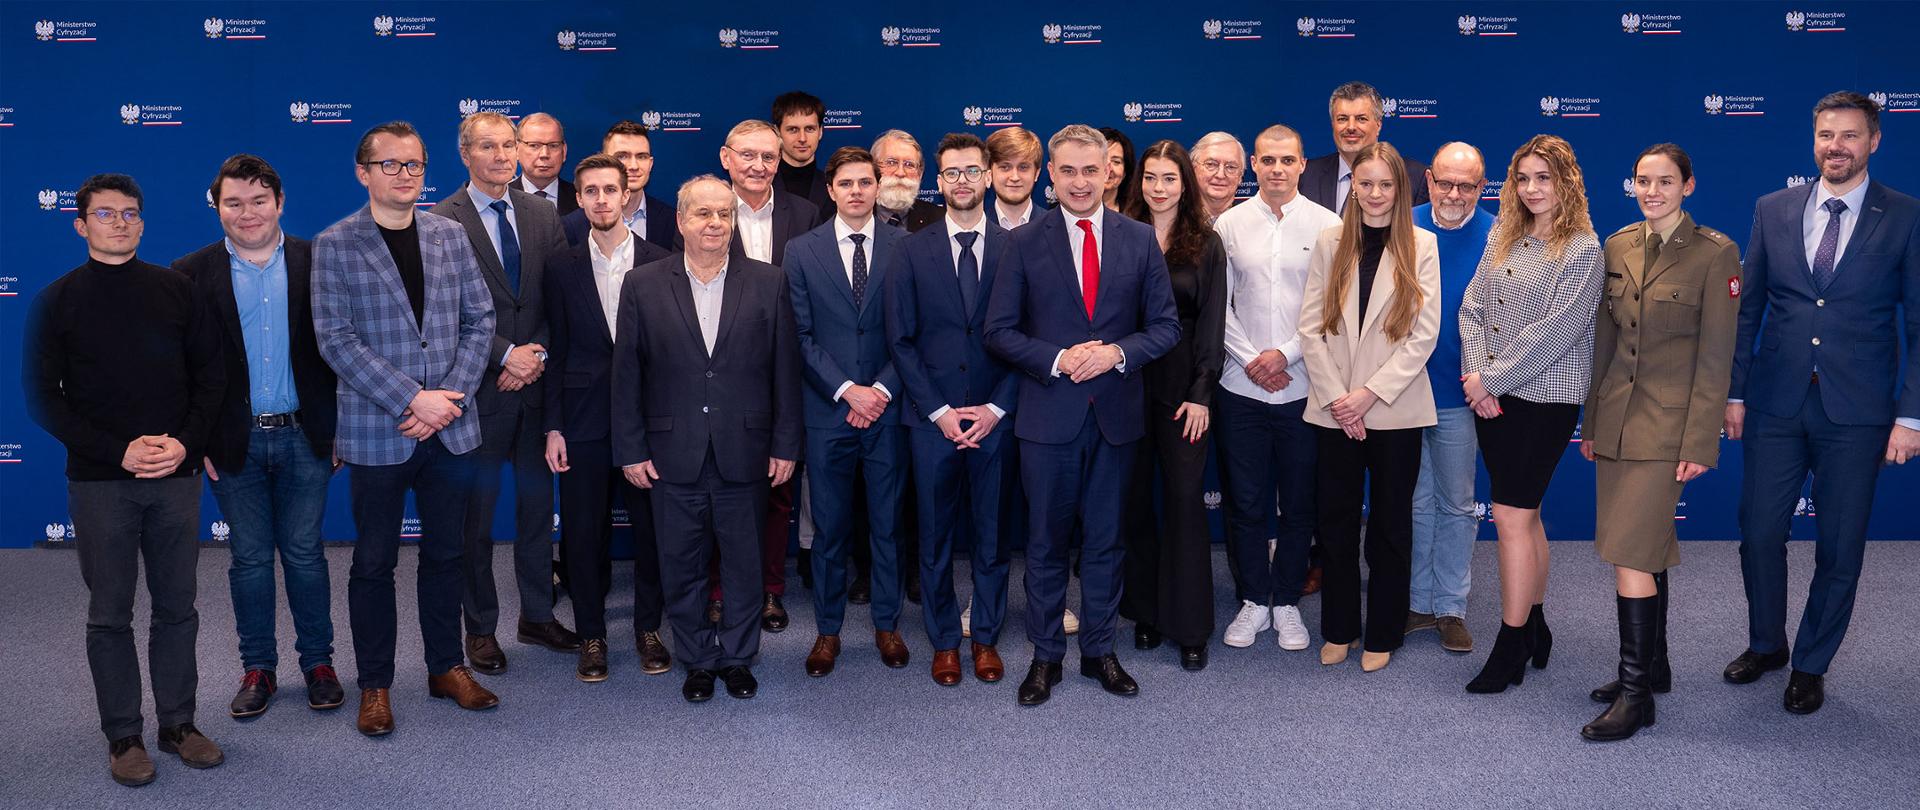 Minister Gawkowski wręczył nagrody w ramach Ogólnopolskiego Międzyuczelnianego Konkursu Młodych Mistrzów 